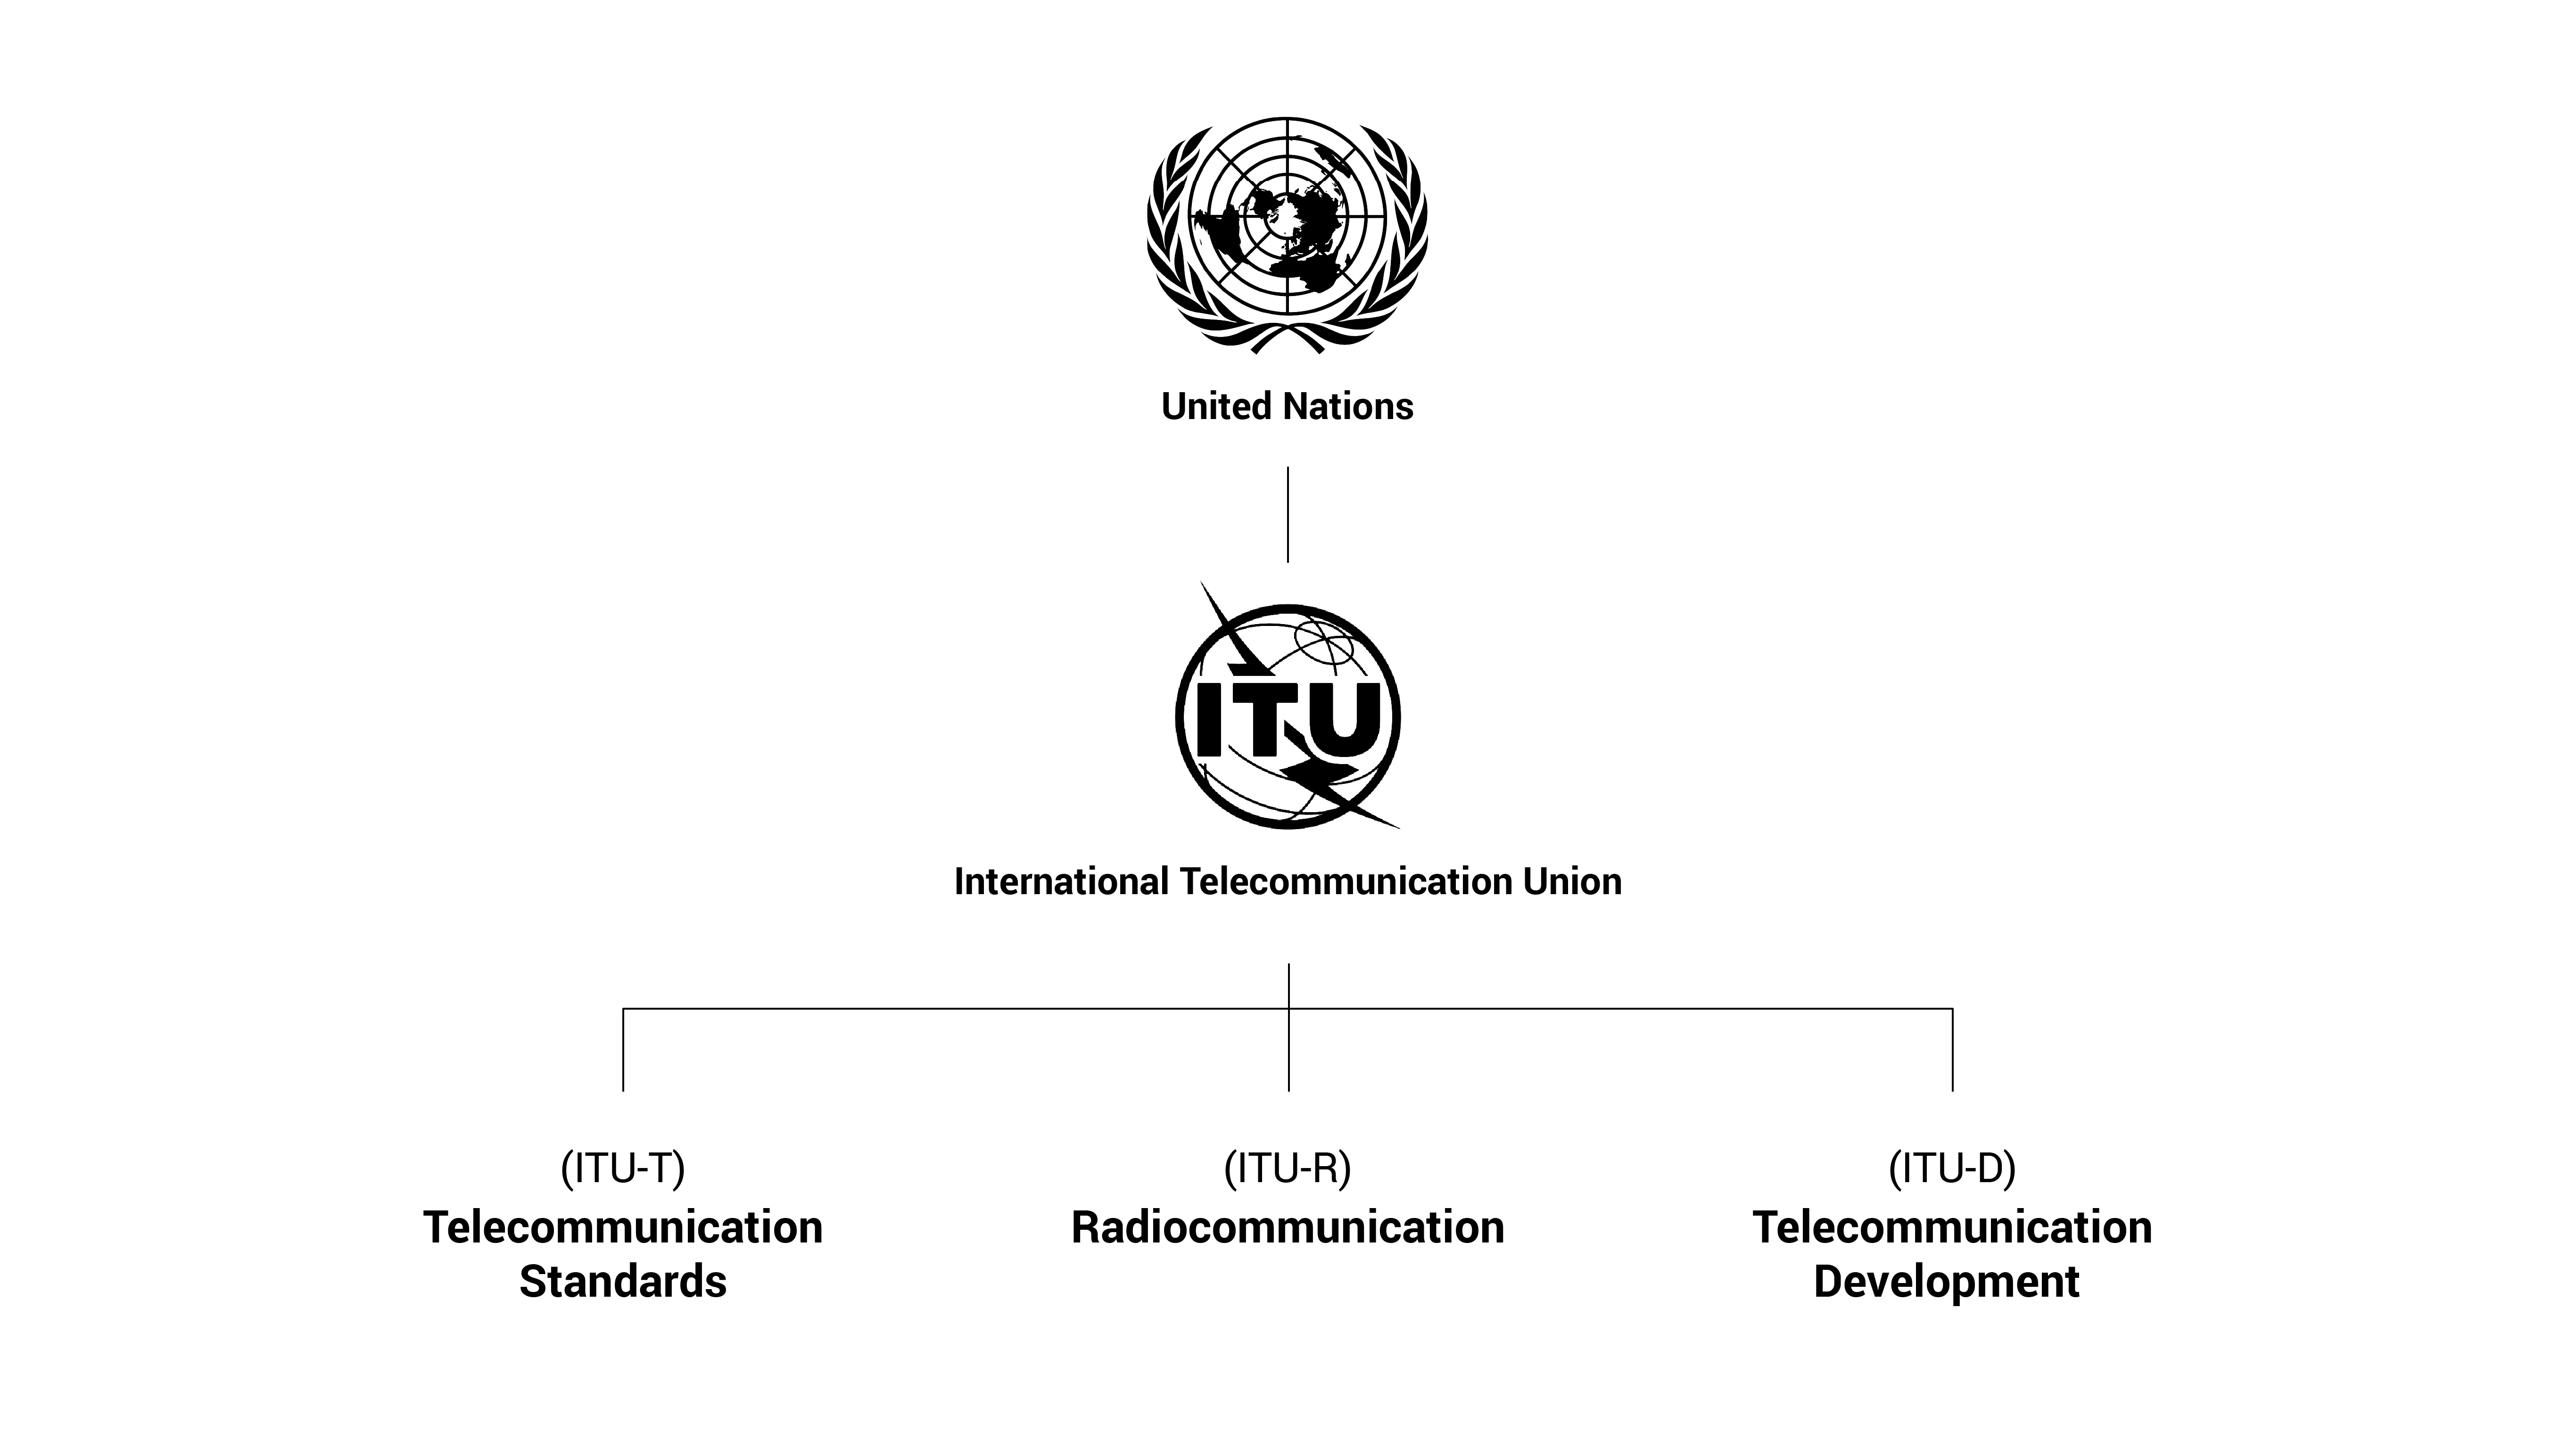 Relationship chart of UN, ITU and three ITU sectors